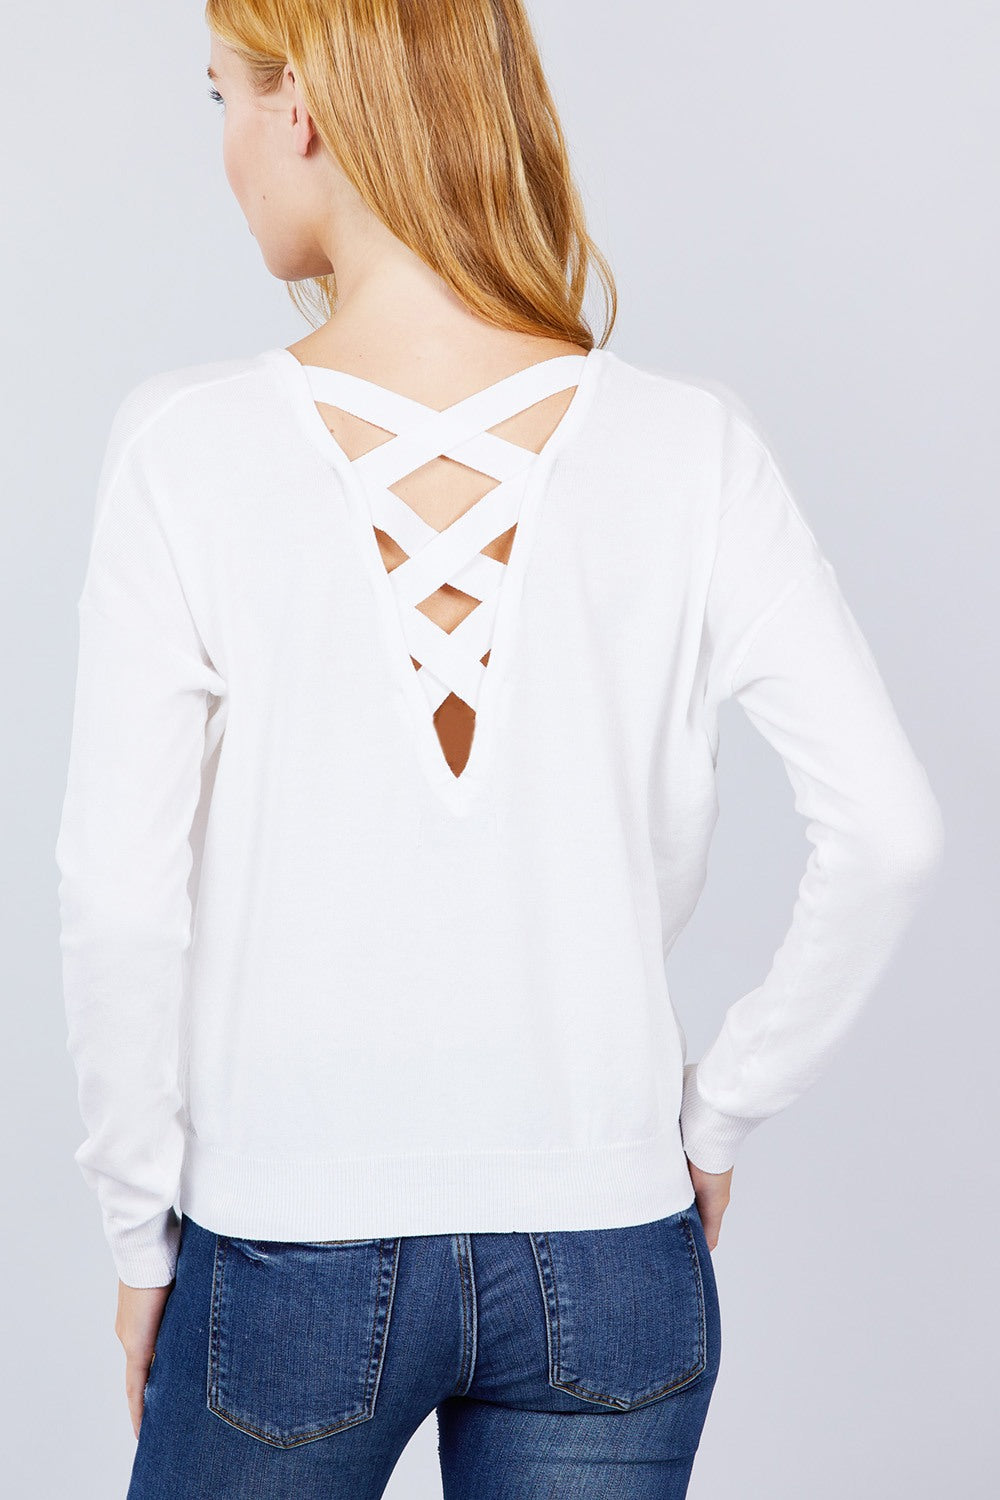 V-neck Back Cross Sweater